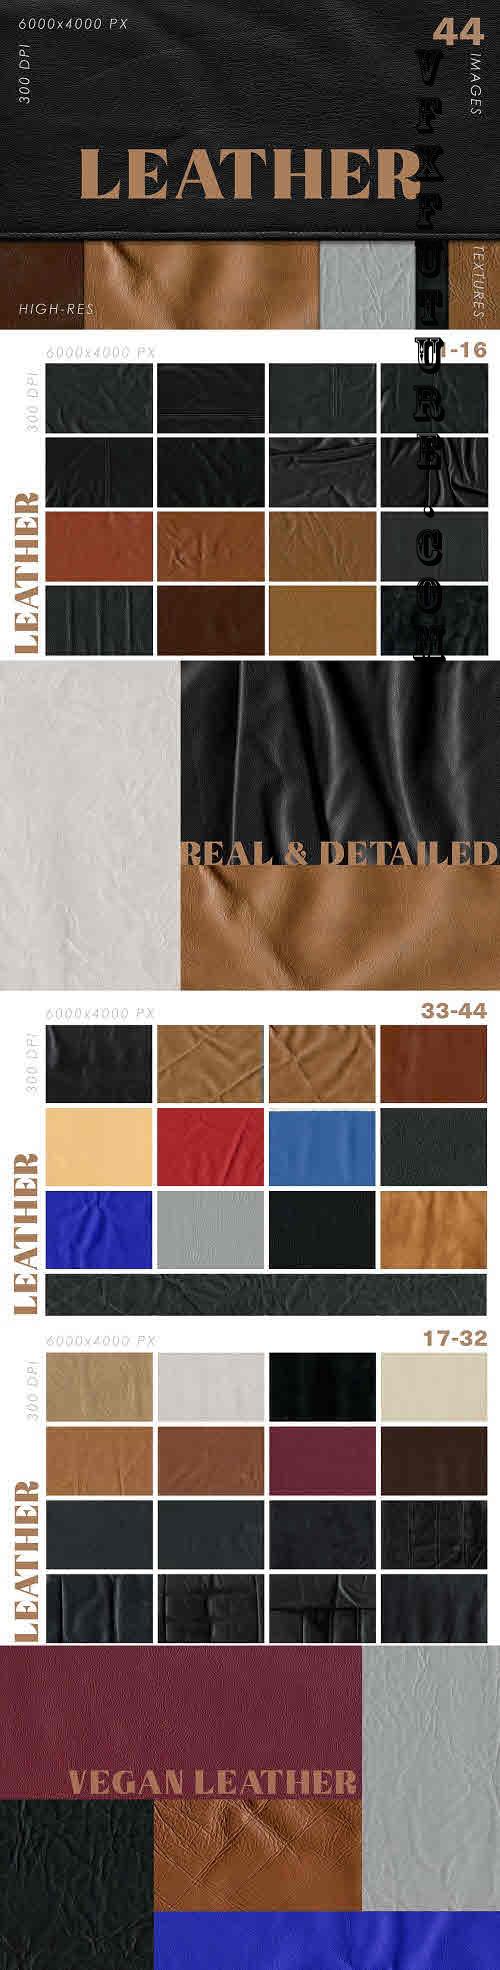 Natural & Vegan Leather Textures - 7427254